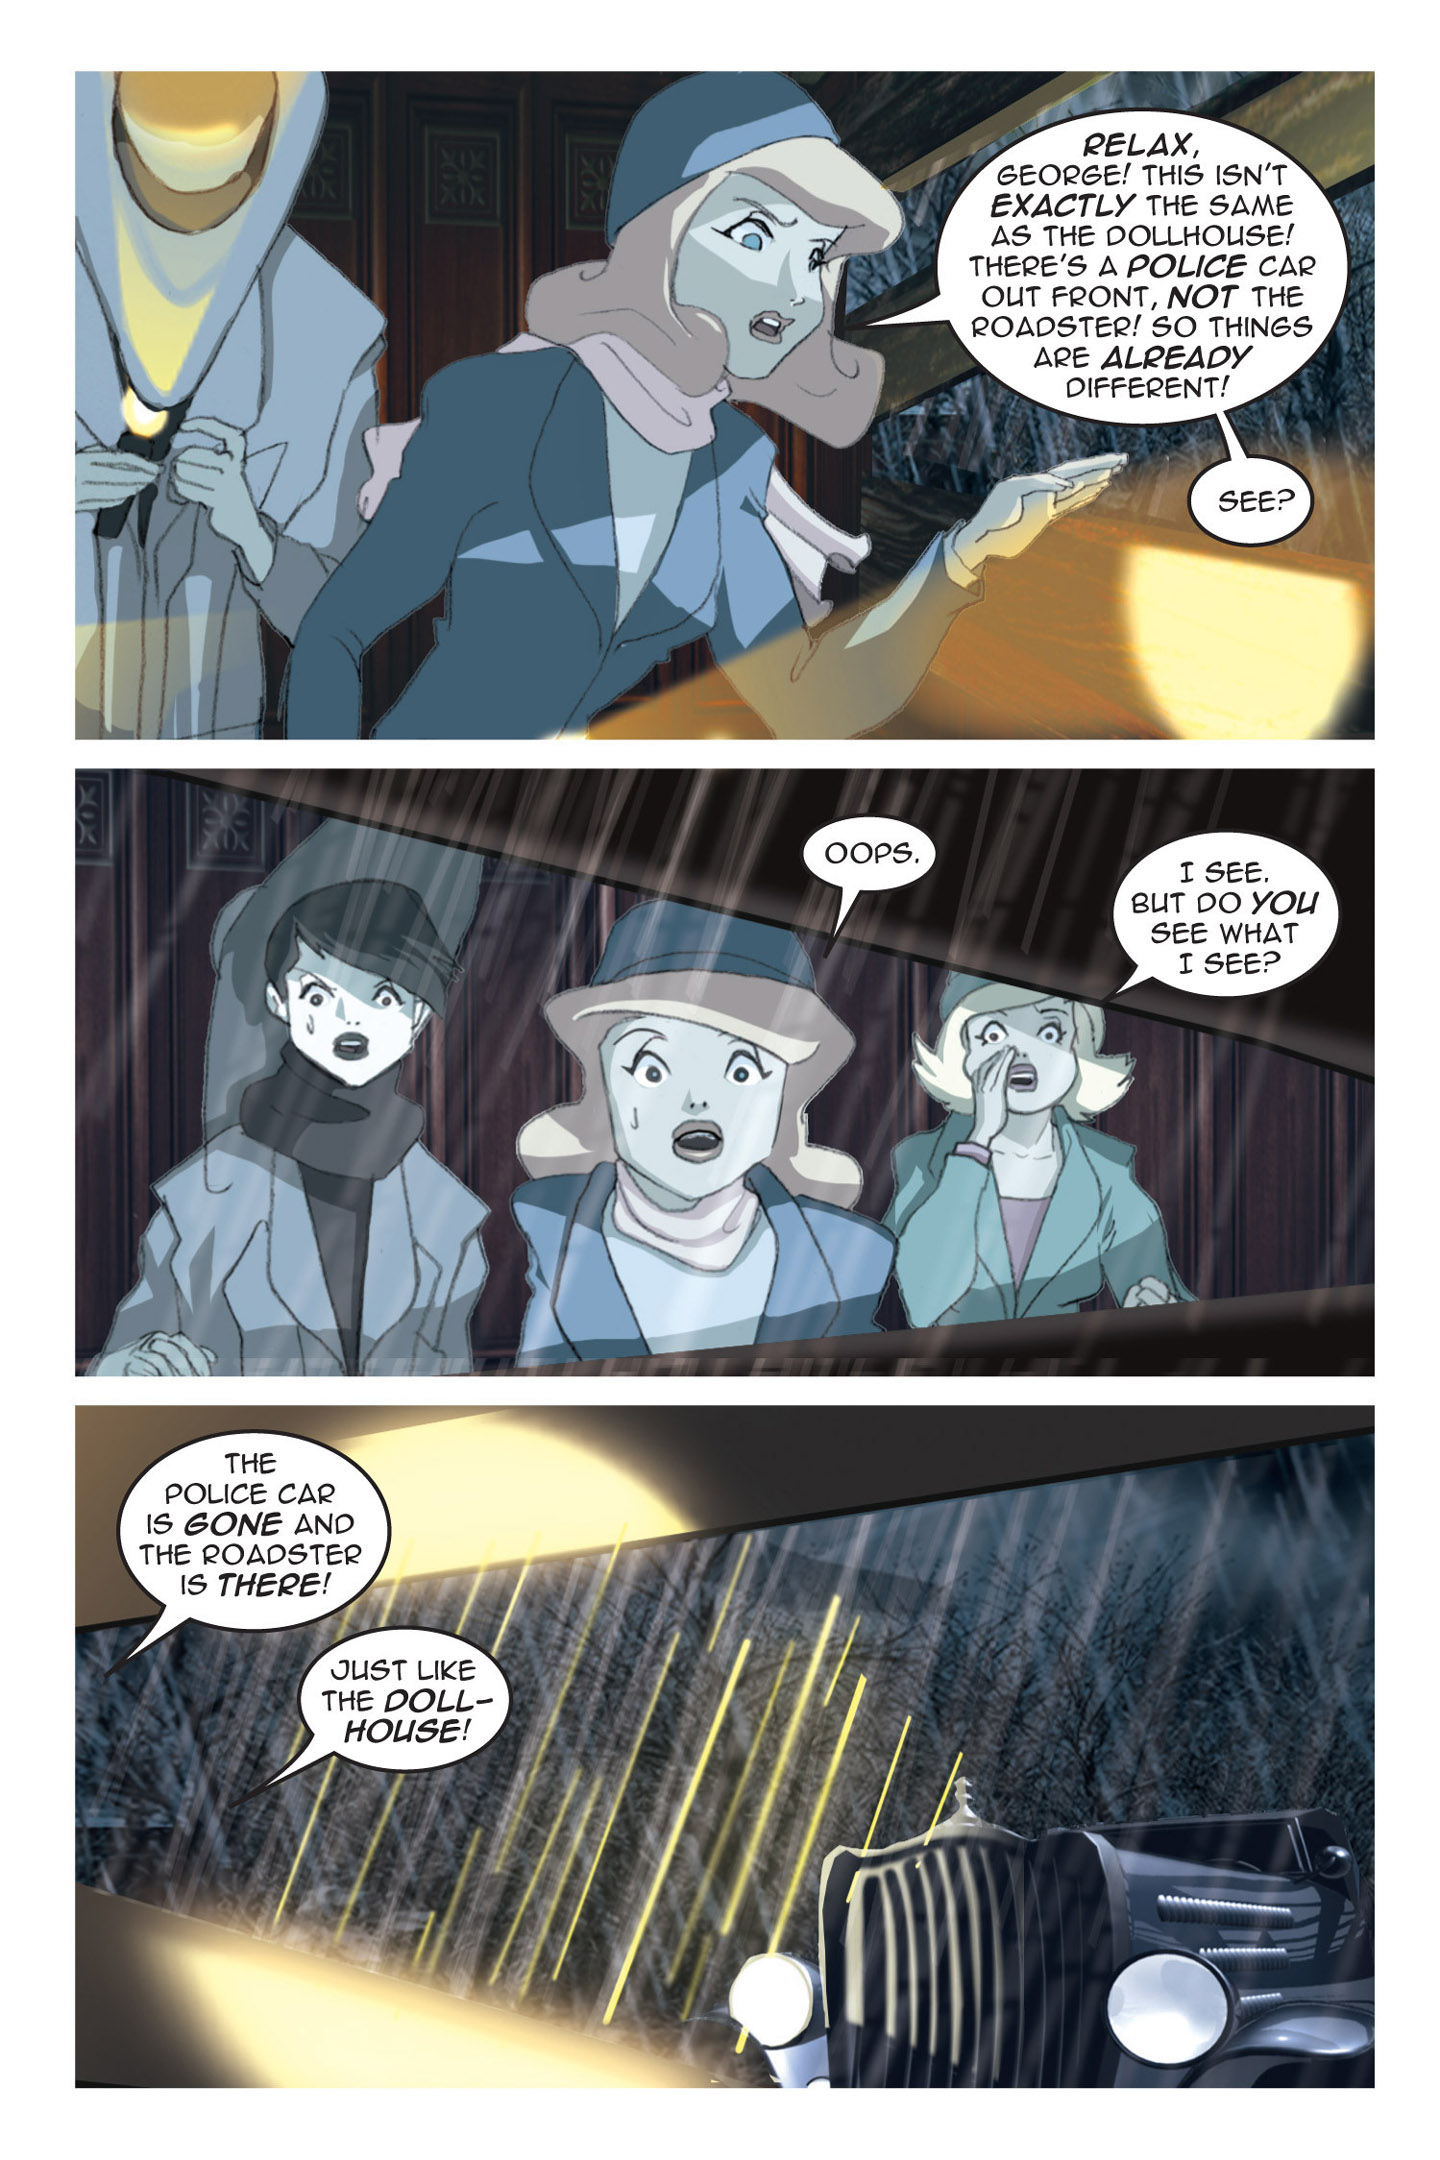 Read online Nancy Drew comic -  Issue #3 - 69